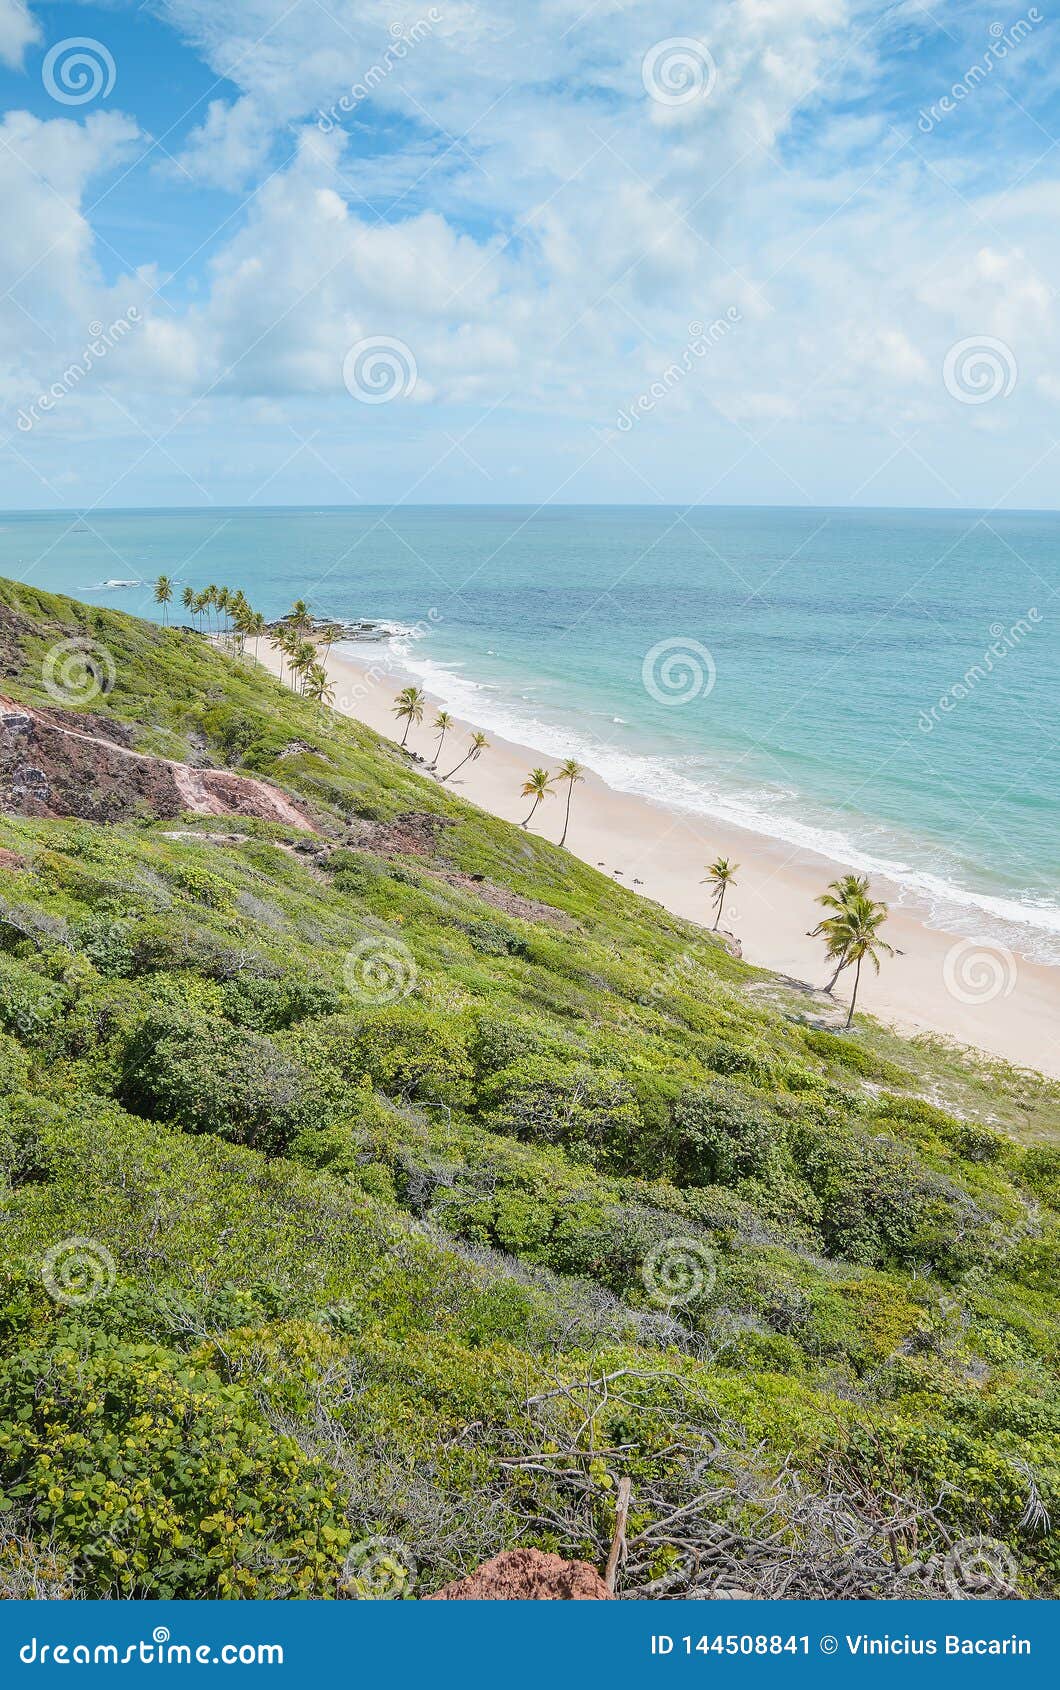 praia de coqueirinho, conde pb brazil